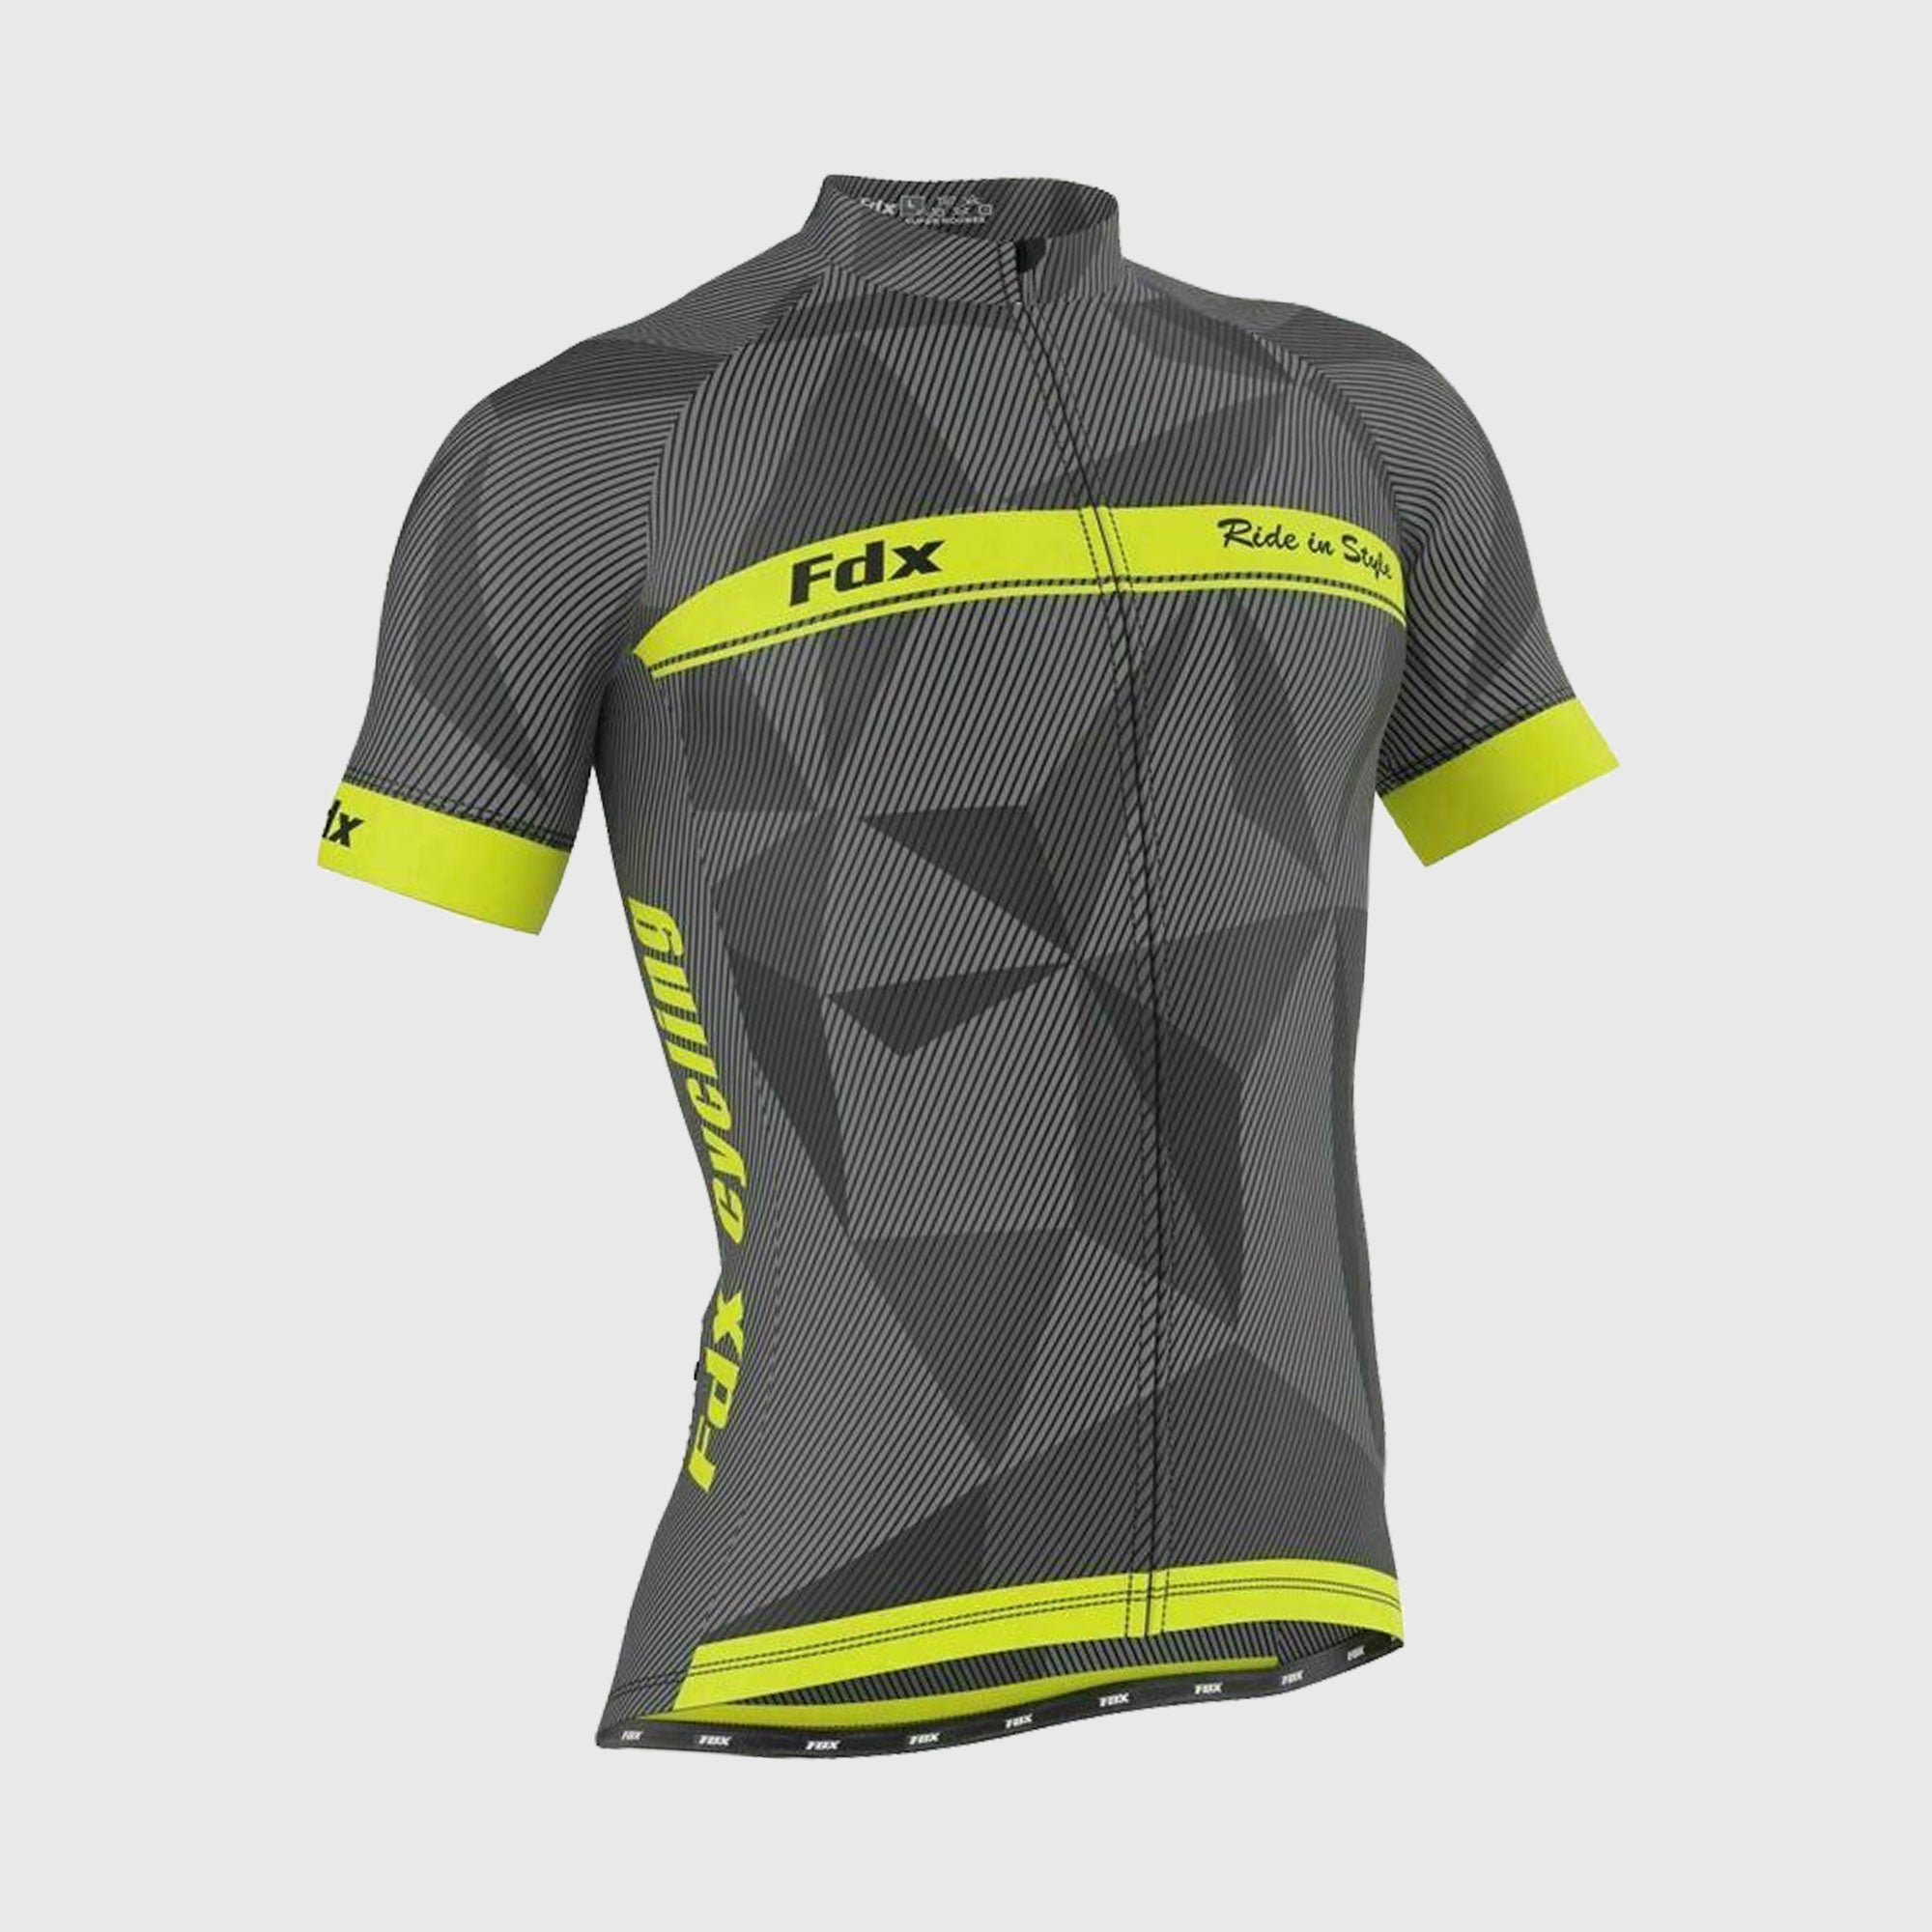 Fdx Splinter Yellow Men's Short Sleeve Summer Cycling Jersey